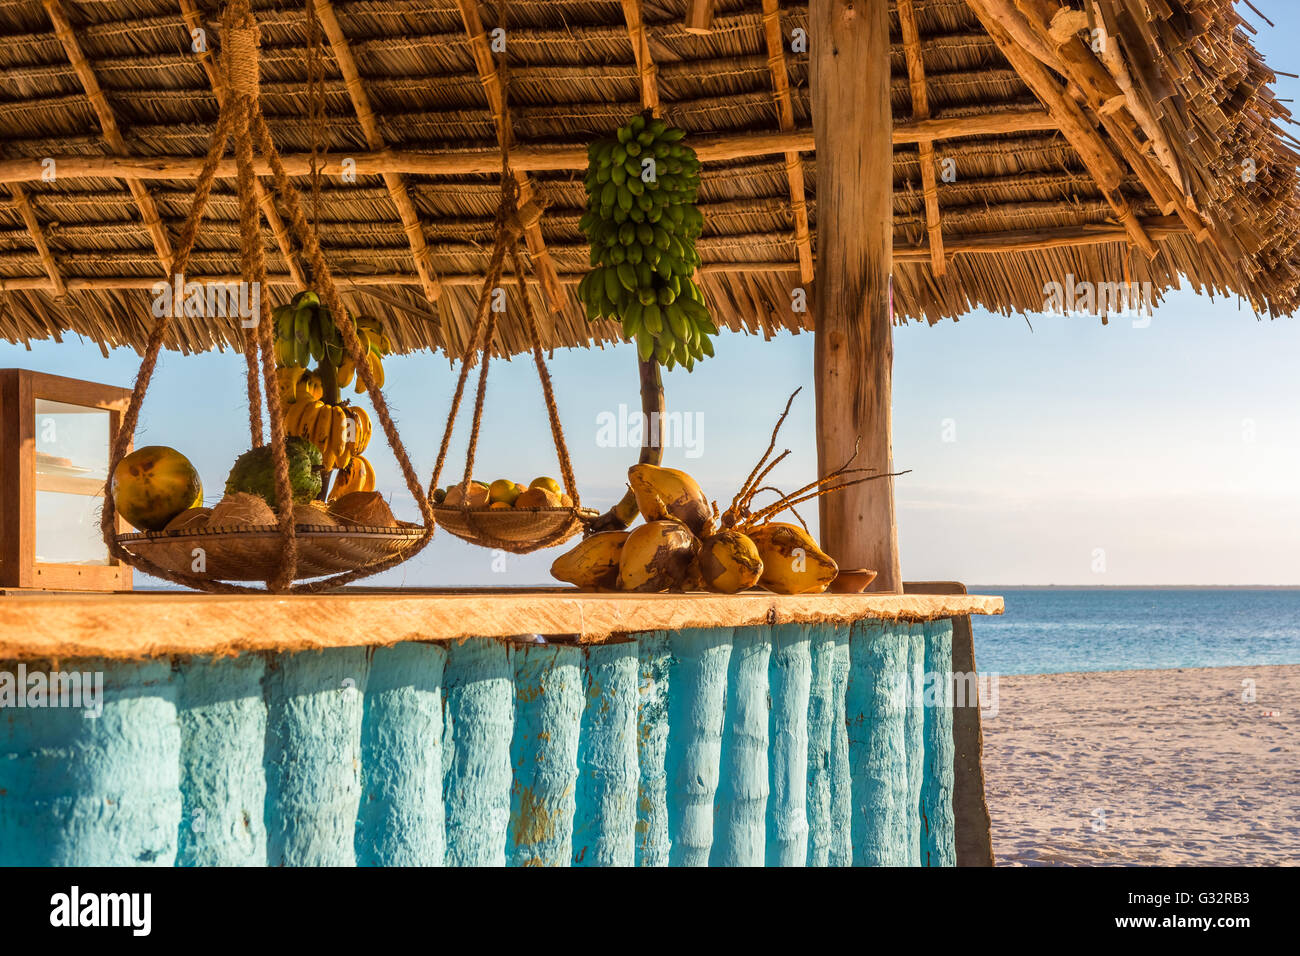 Nella foto il bar sulla spiaggia di Nungwi ( Zanzibar ) al tramonto , con esposto il cocco , banana e frutta tropicale .Questa barra è realizzata w Foto Stock